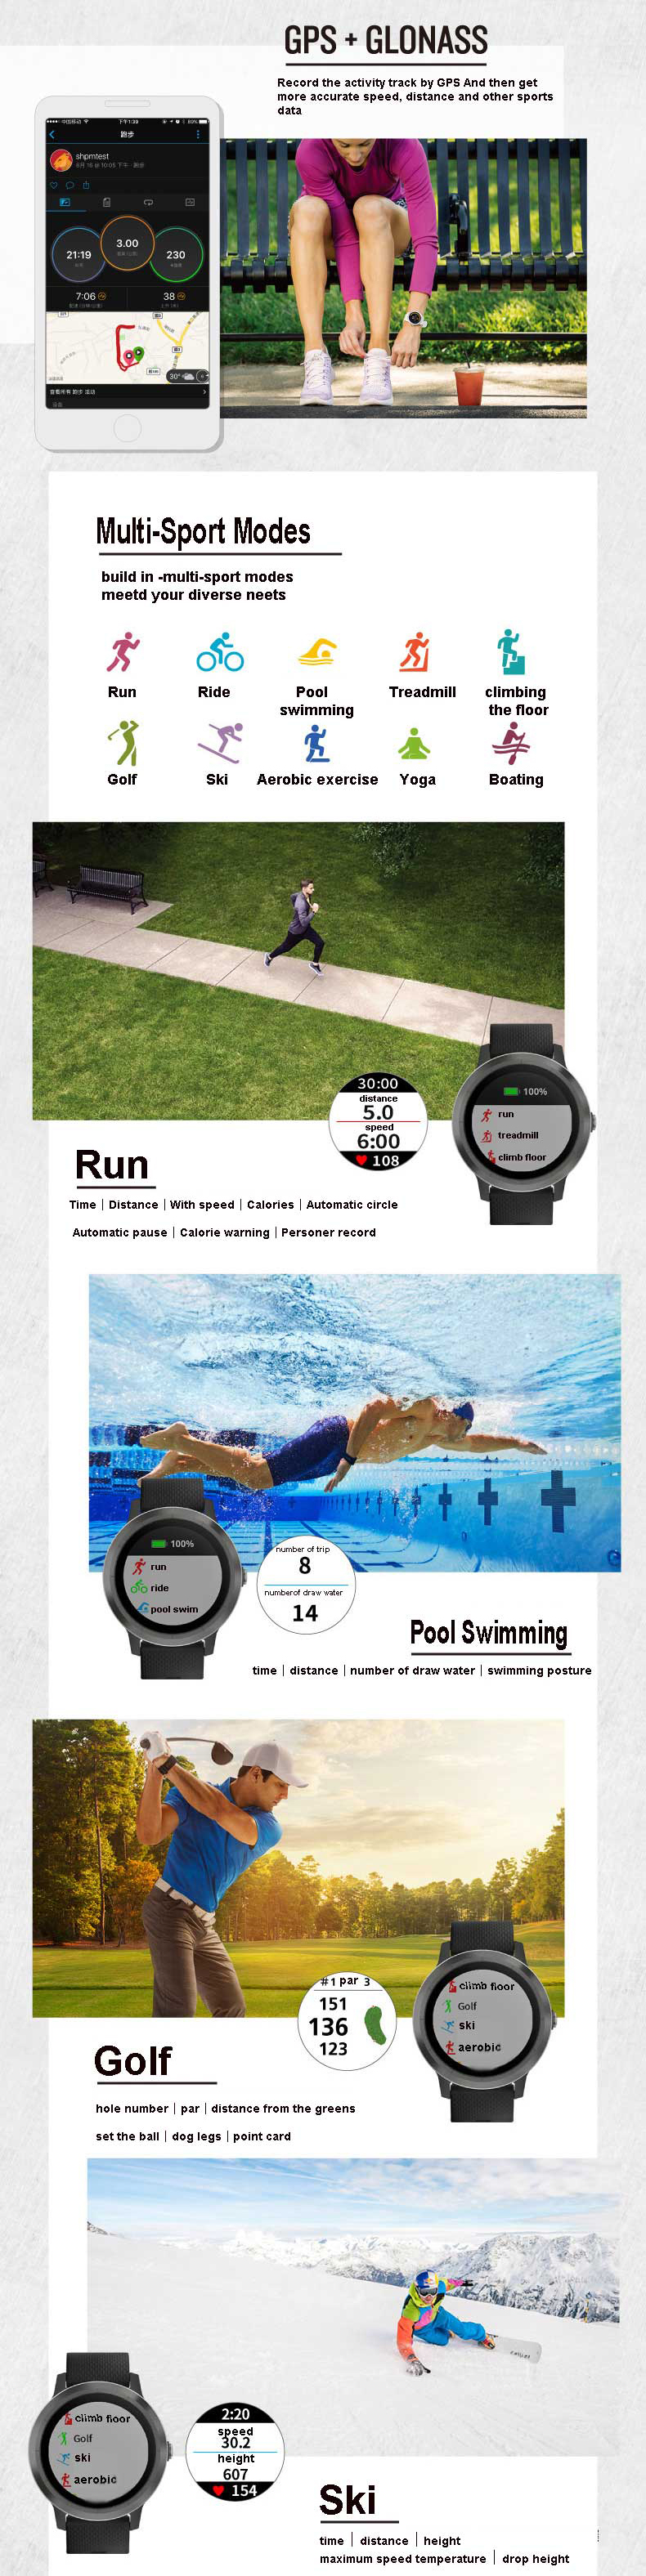 Garmin Vivoactive3 1.2Inch Touch Screen GPS+GLONASS Muti-sport Modes NFC Heart Rate Smart Watch 12